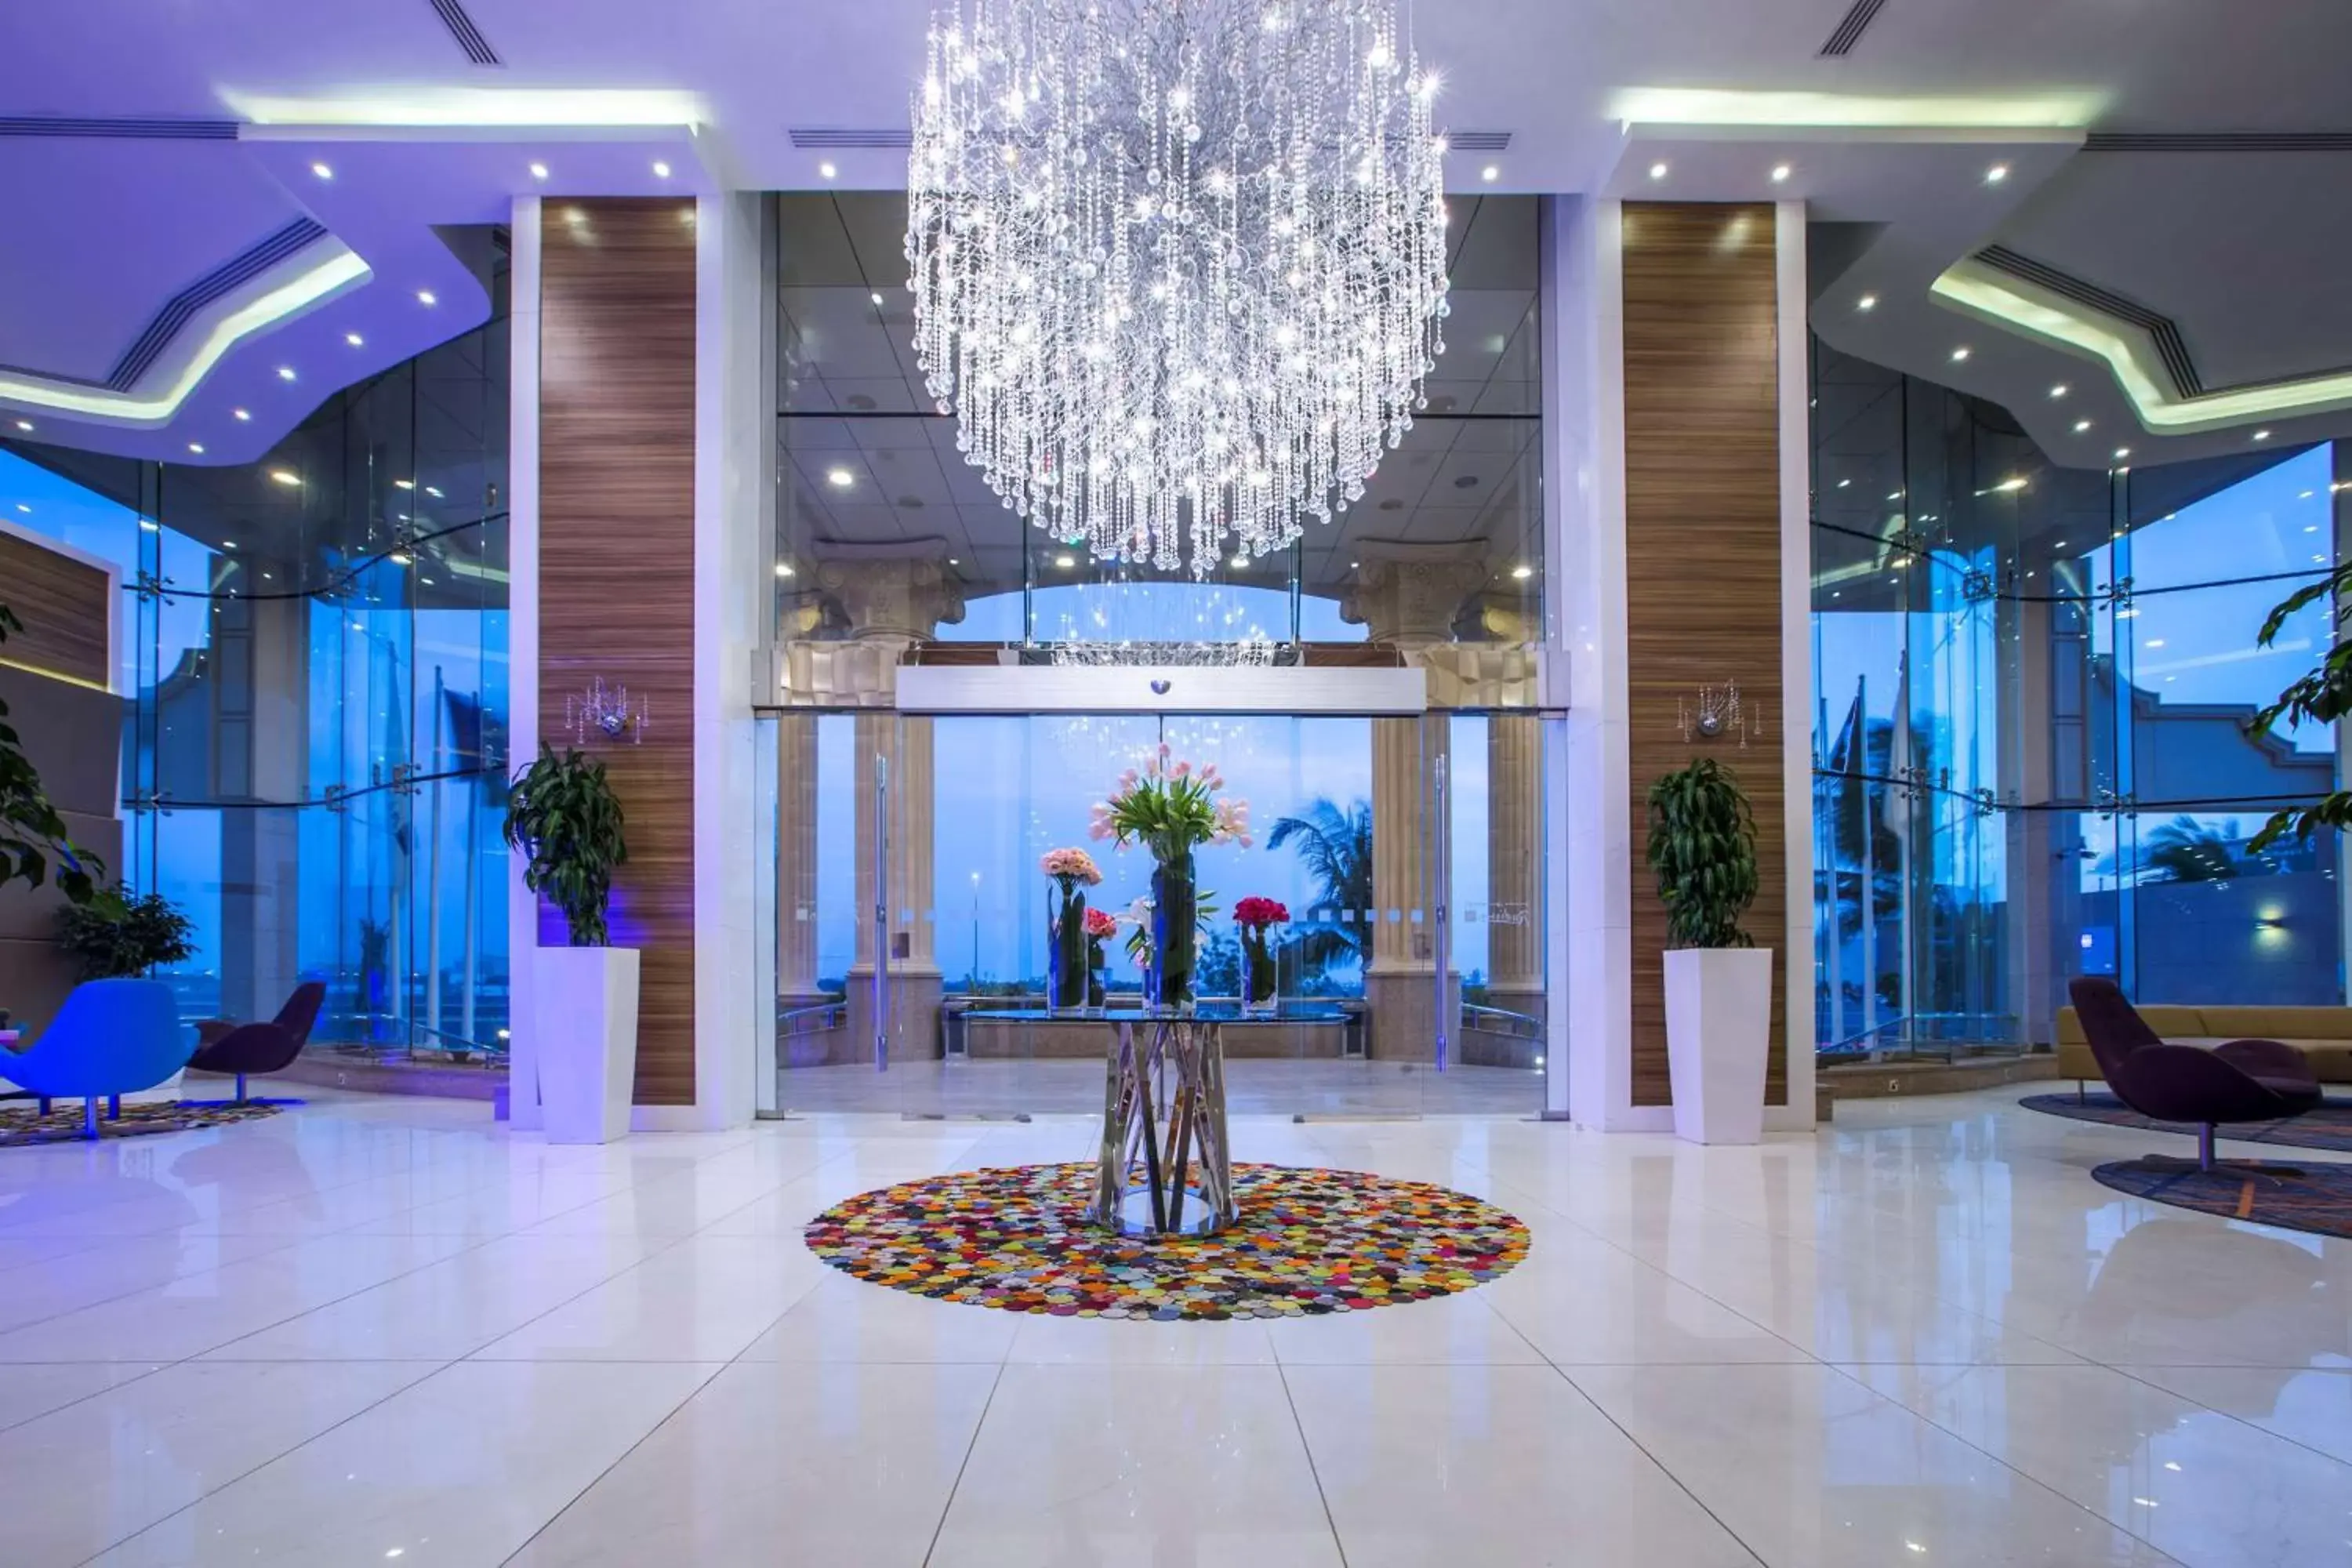 Lobby or reception, Lobby/Reception in Radisson Blu Plaza Jeddah